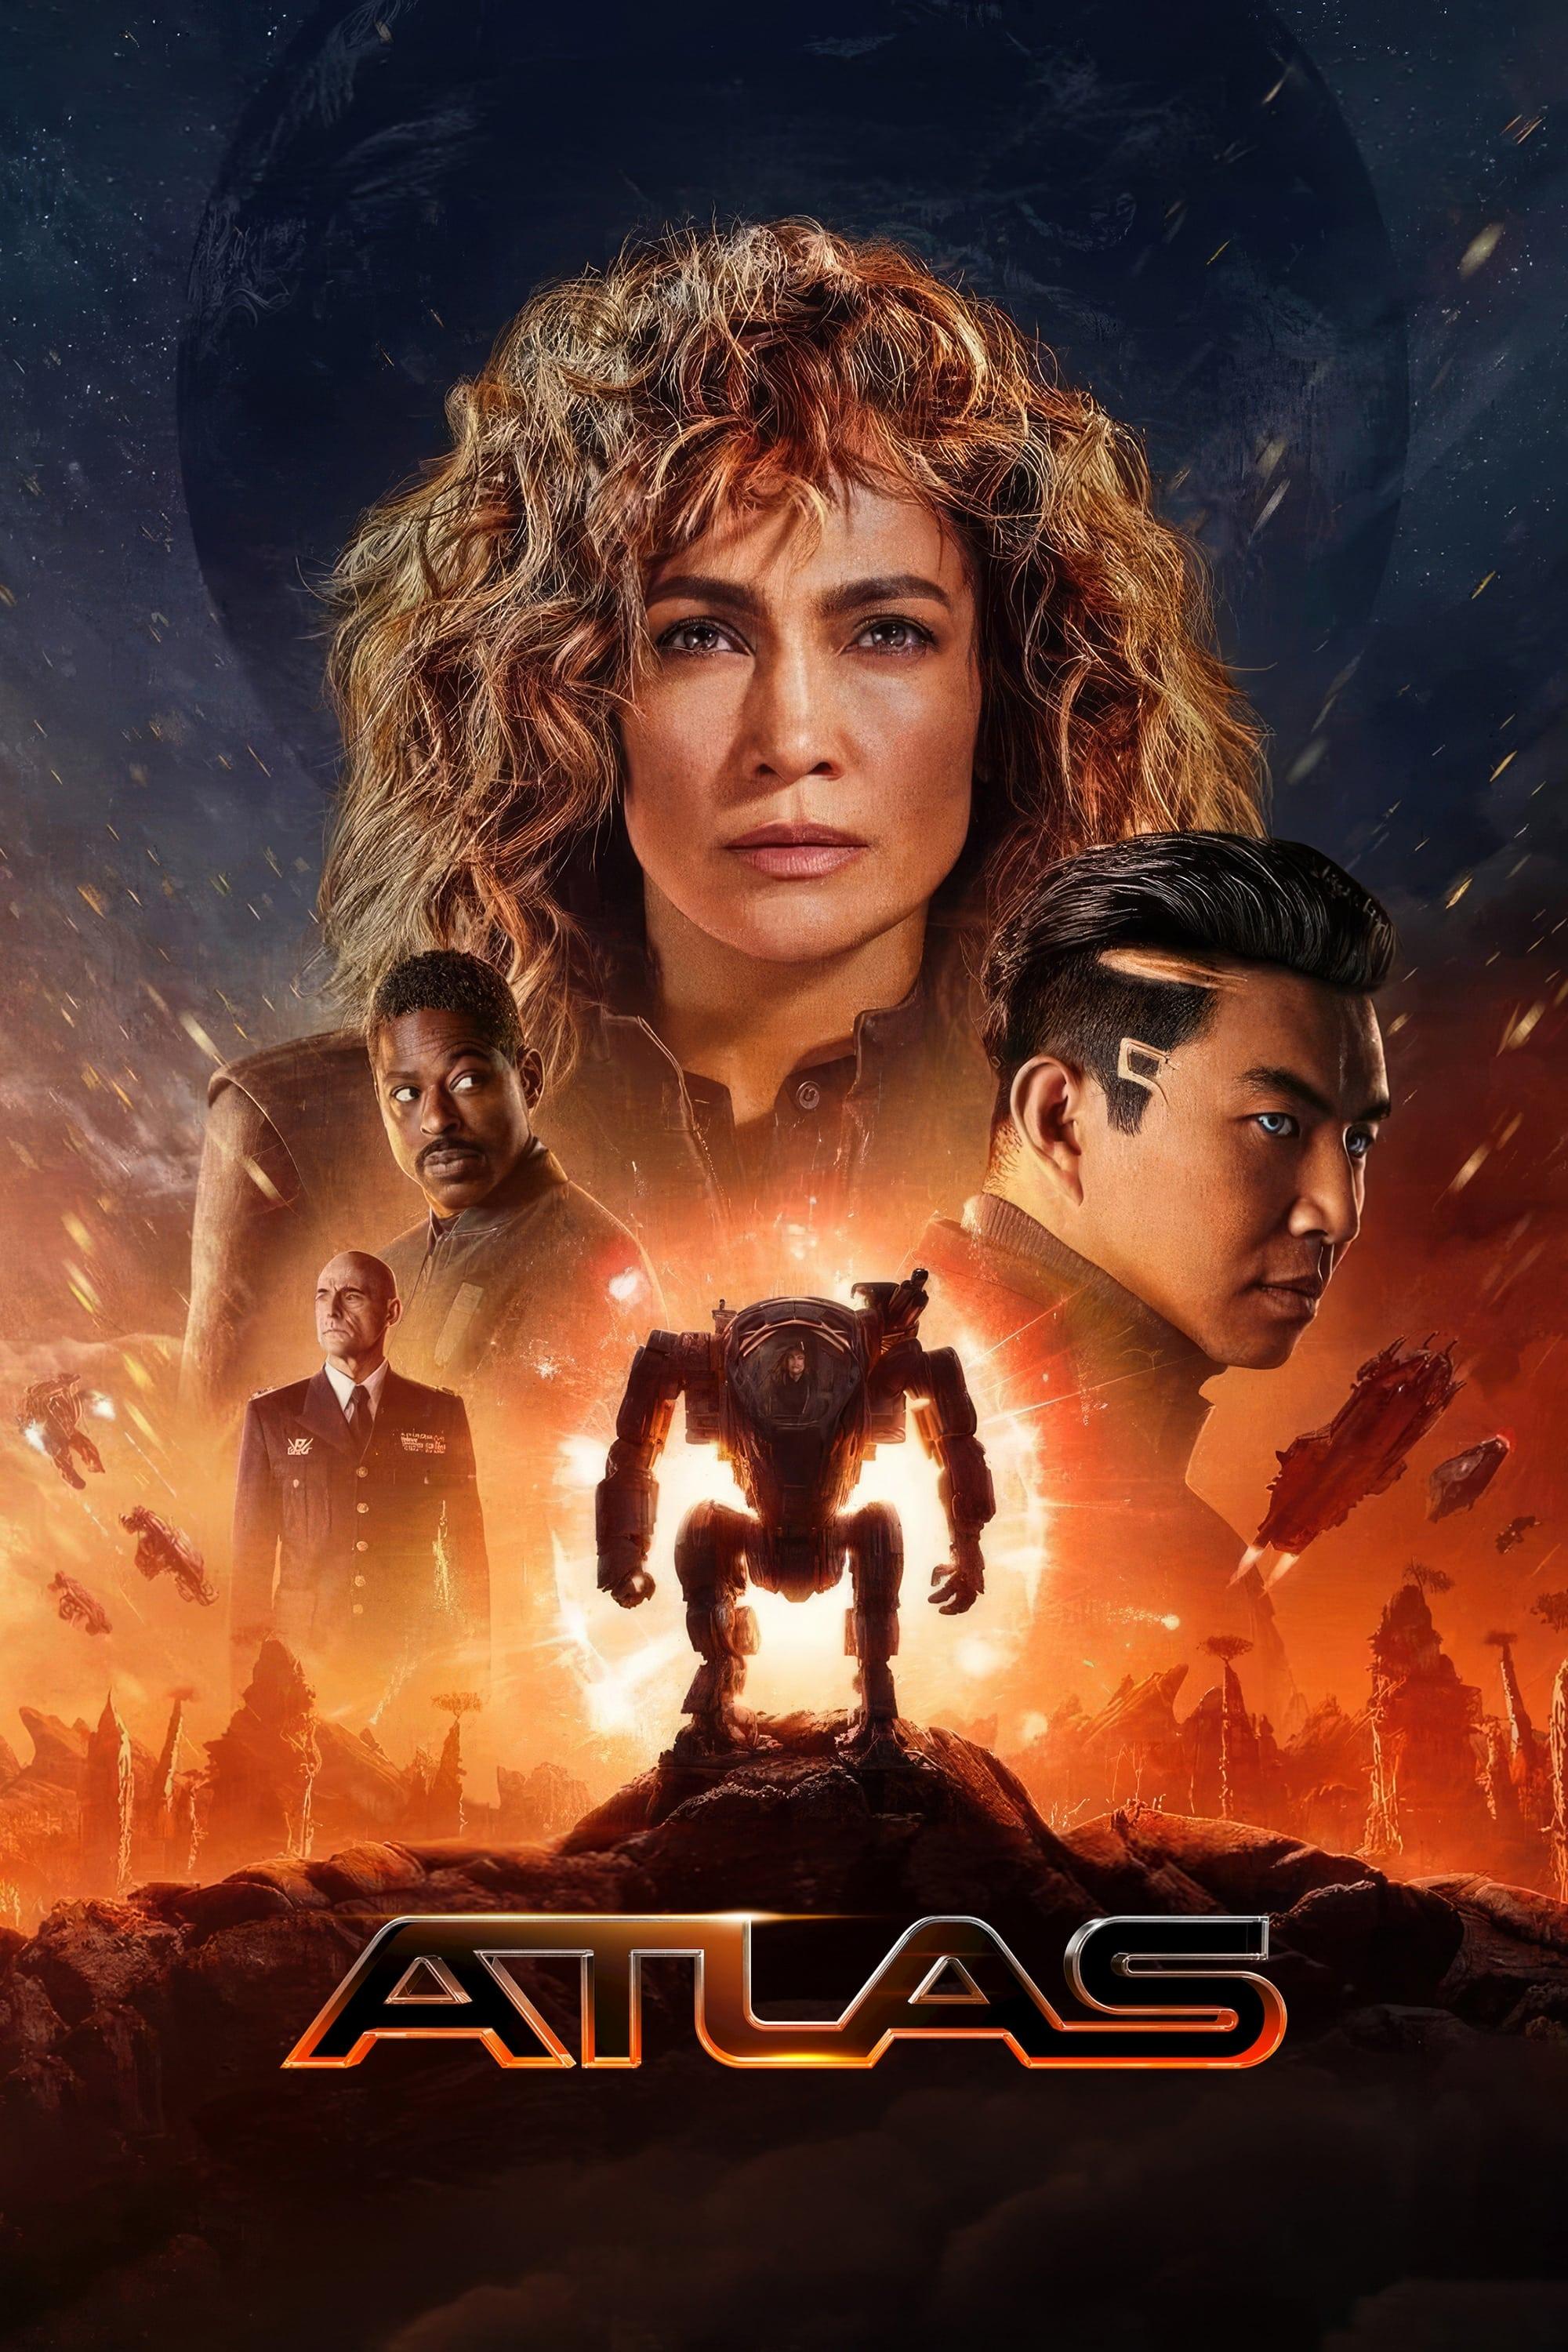 Movie poster of "Atlas"